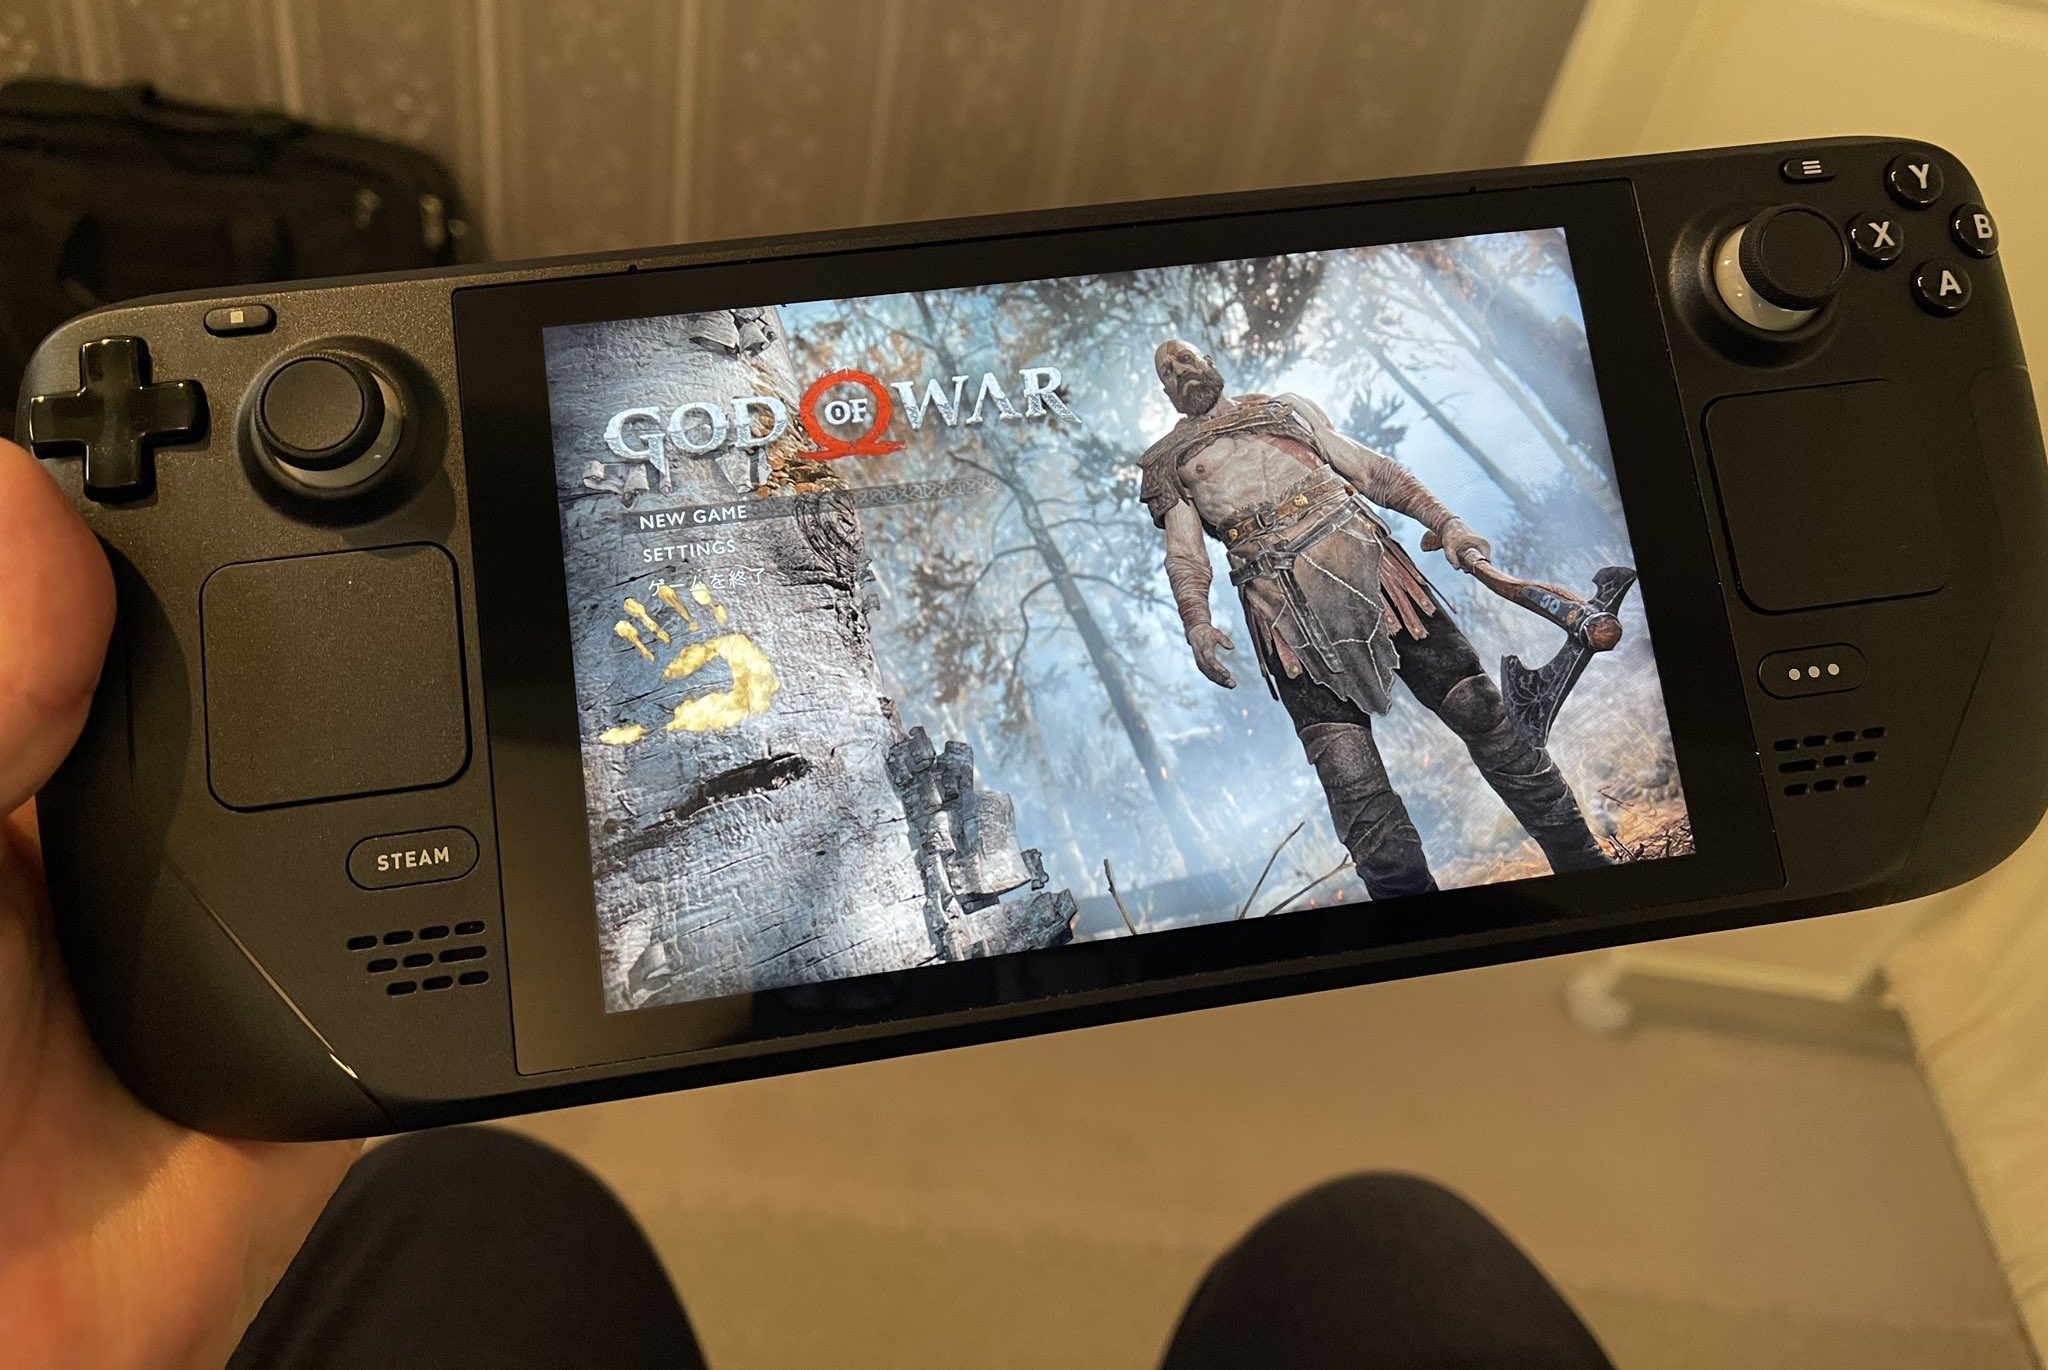 Mời xem video chơi God of War bản PC trên Steam Deck, liệu Valve có thành công với chiếc "mini PC"?